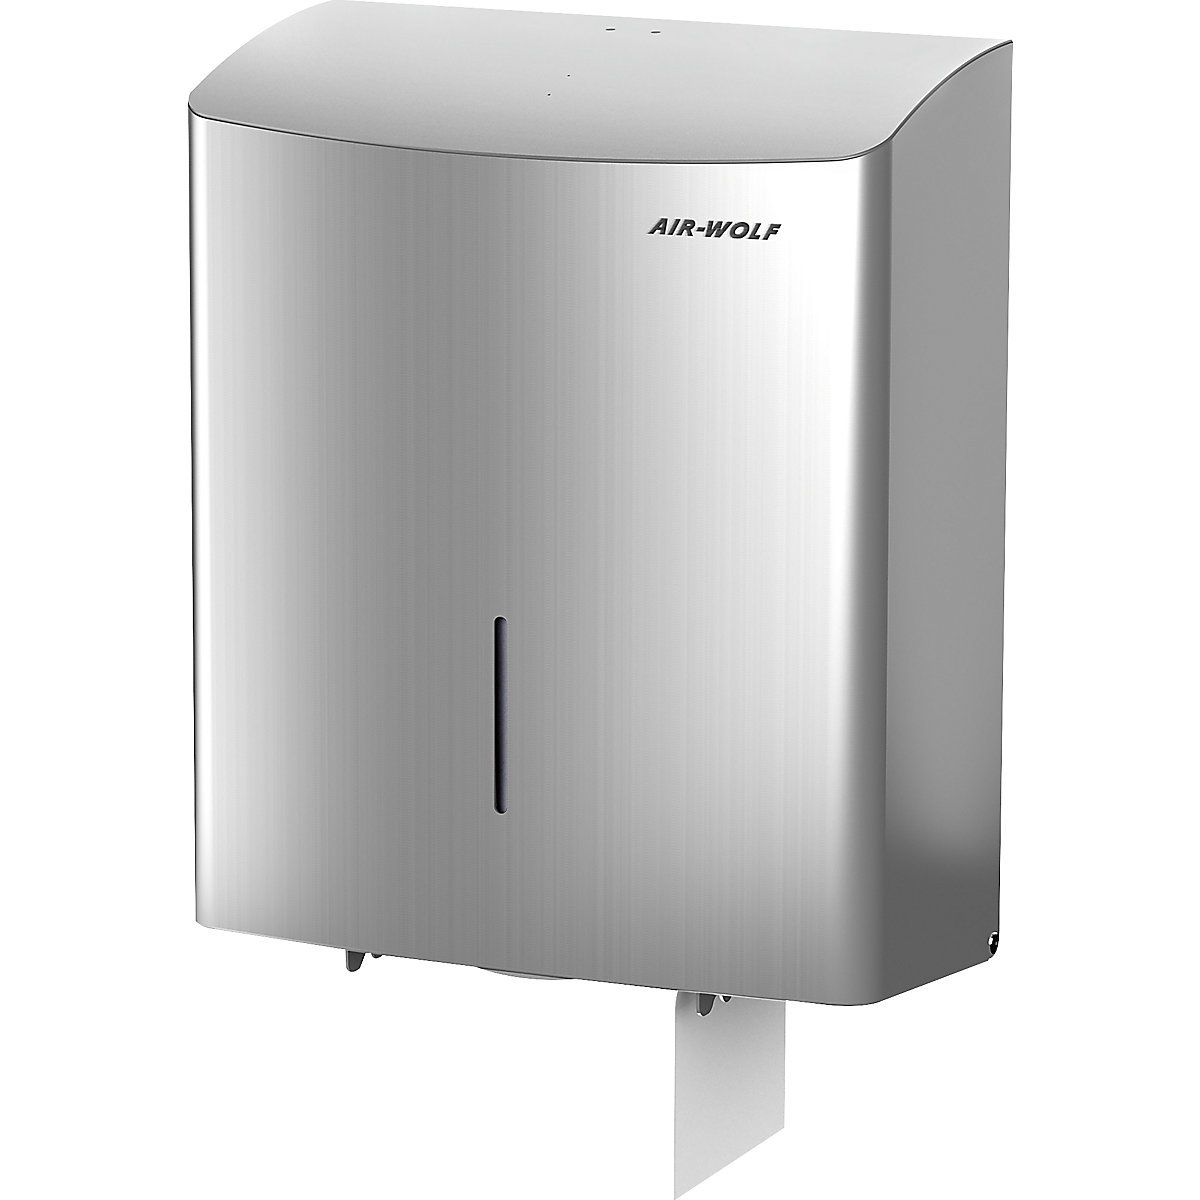 Duplex-toiletpapierdispenser – AIR-WOLF